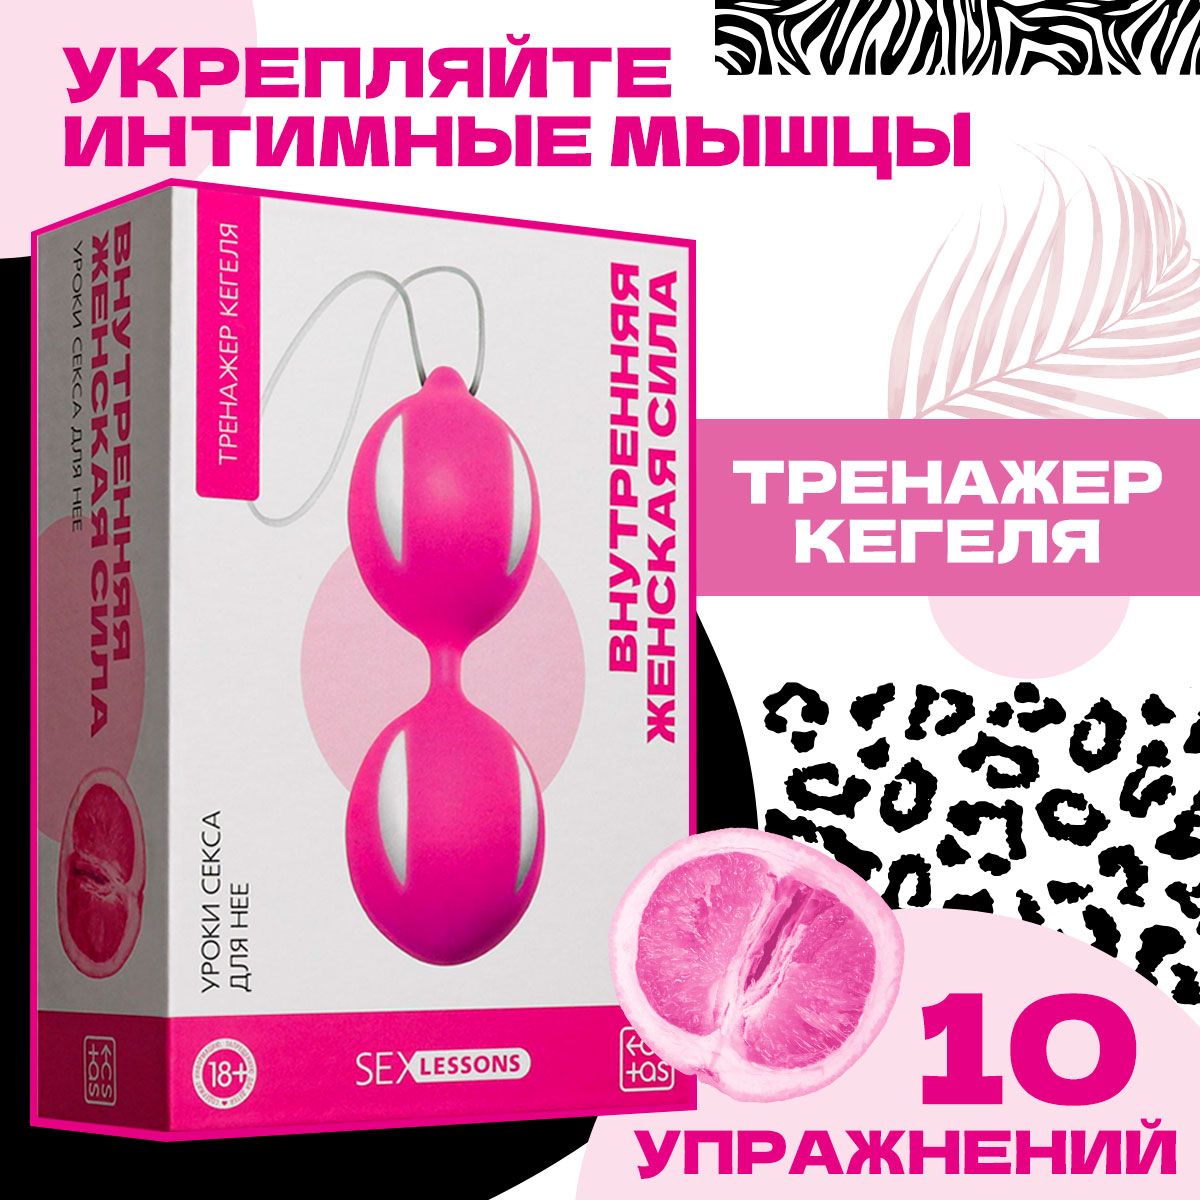 Женщины и секс игрушки эротика (70 фото) - порно riosalon.ru